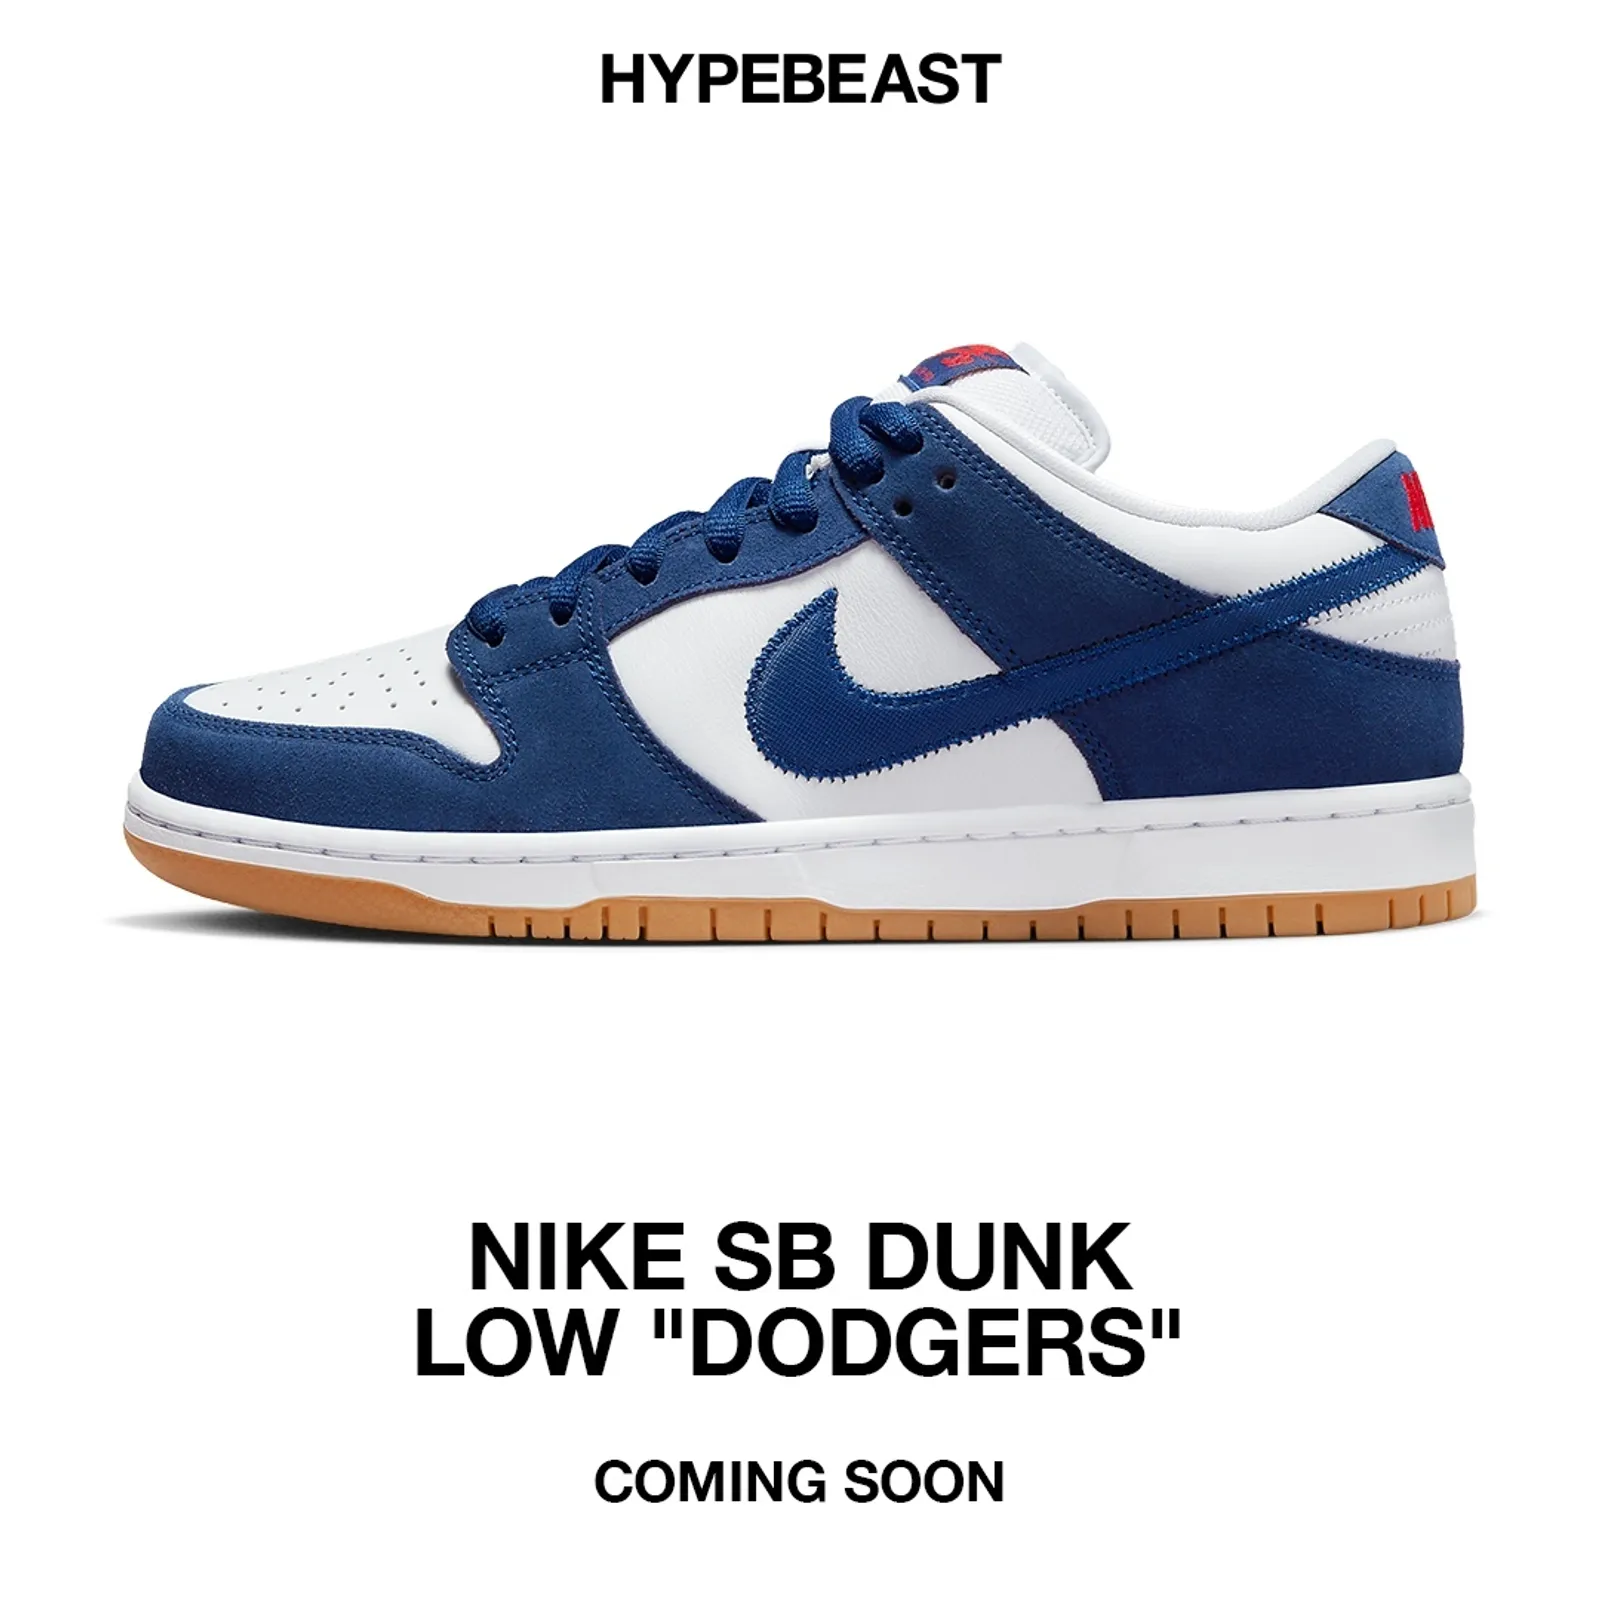 Intip Detail pada Sneaker Nike SB Dunk Low 'Dodgers'!